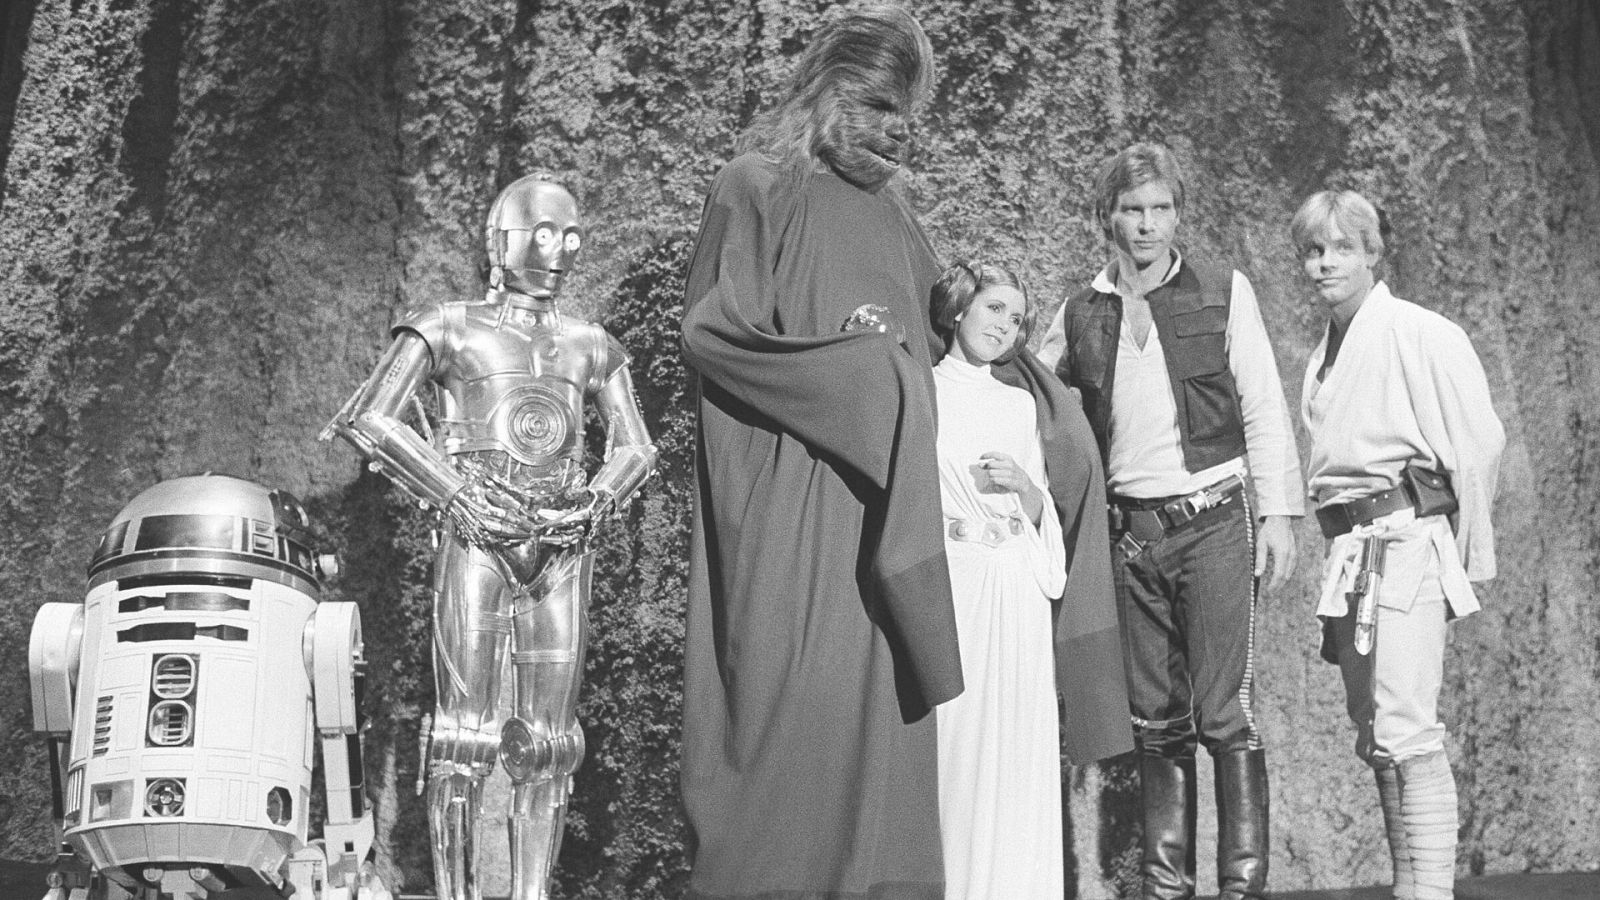 La primera película de la serie, 'Star Wars: Episodio IV - Una nueva esperanza' se estrenó en 1977